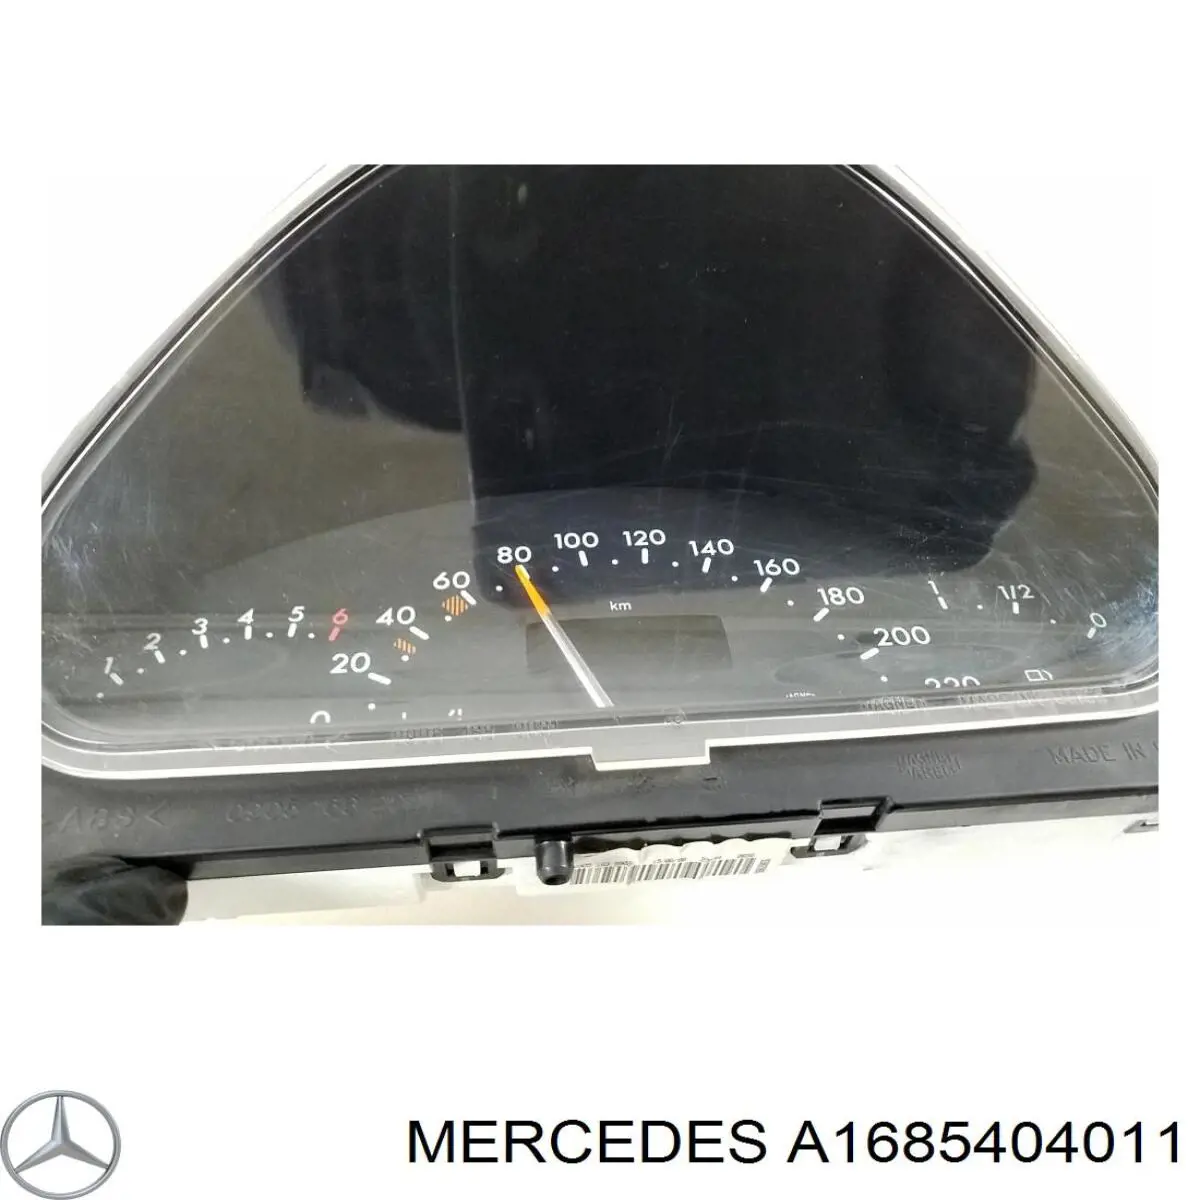 A1685404011 Mercedes tablero de instrumentos (panel de instrumentos)